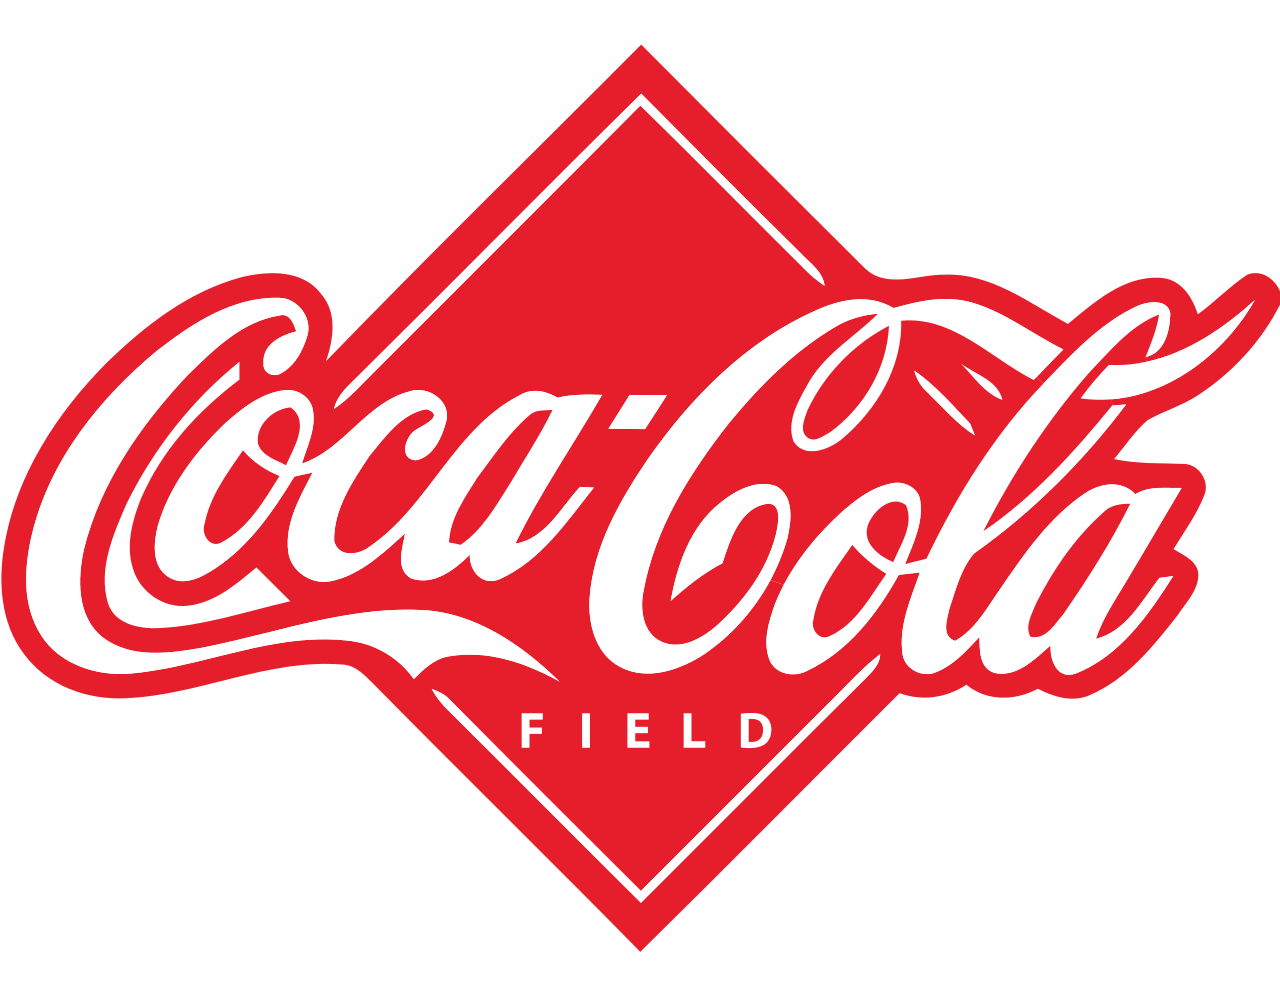 Coca-Cola Logo - Coca Cola logo PNG image free download